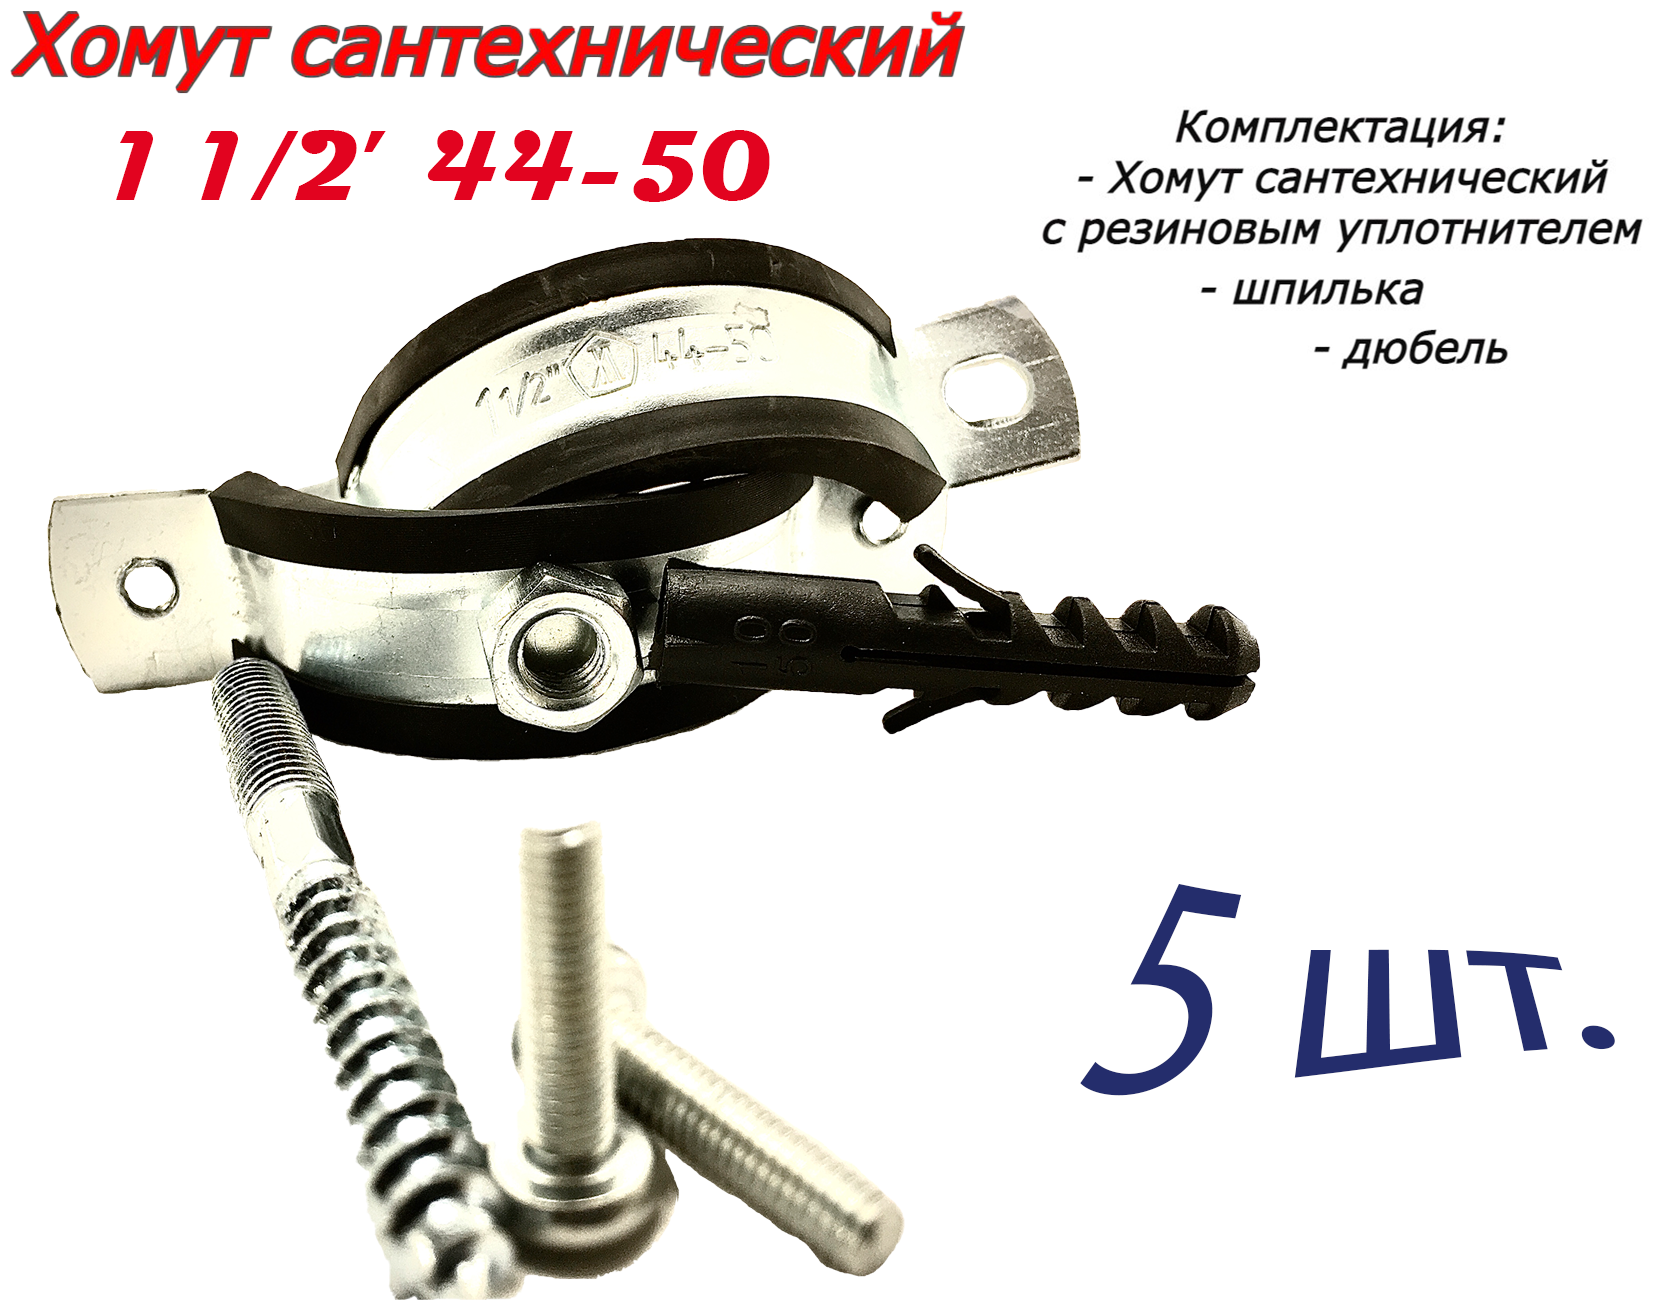 Хомут сантехнический D1" 1/2 44-50 (5 шт) для труб с резиновым уплотнением, шпилькой и дюбелем